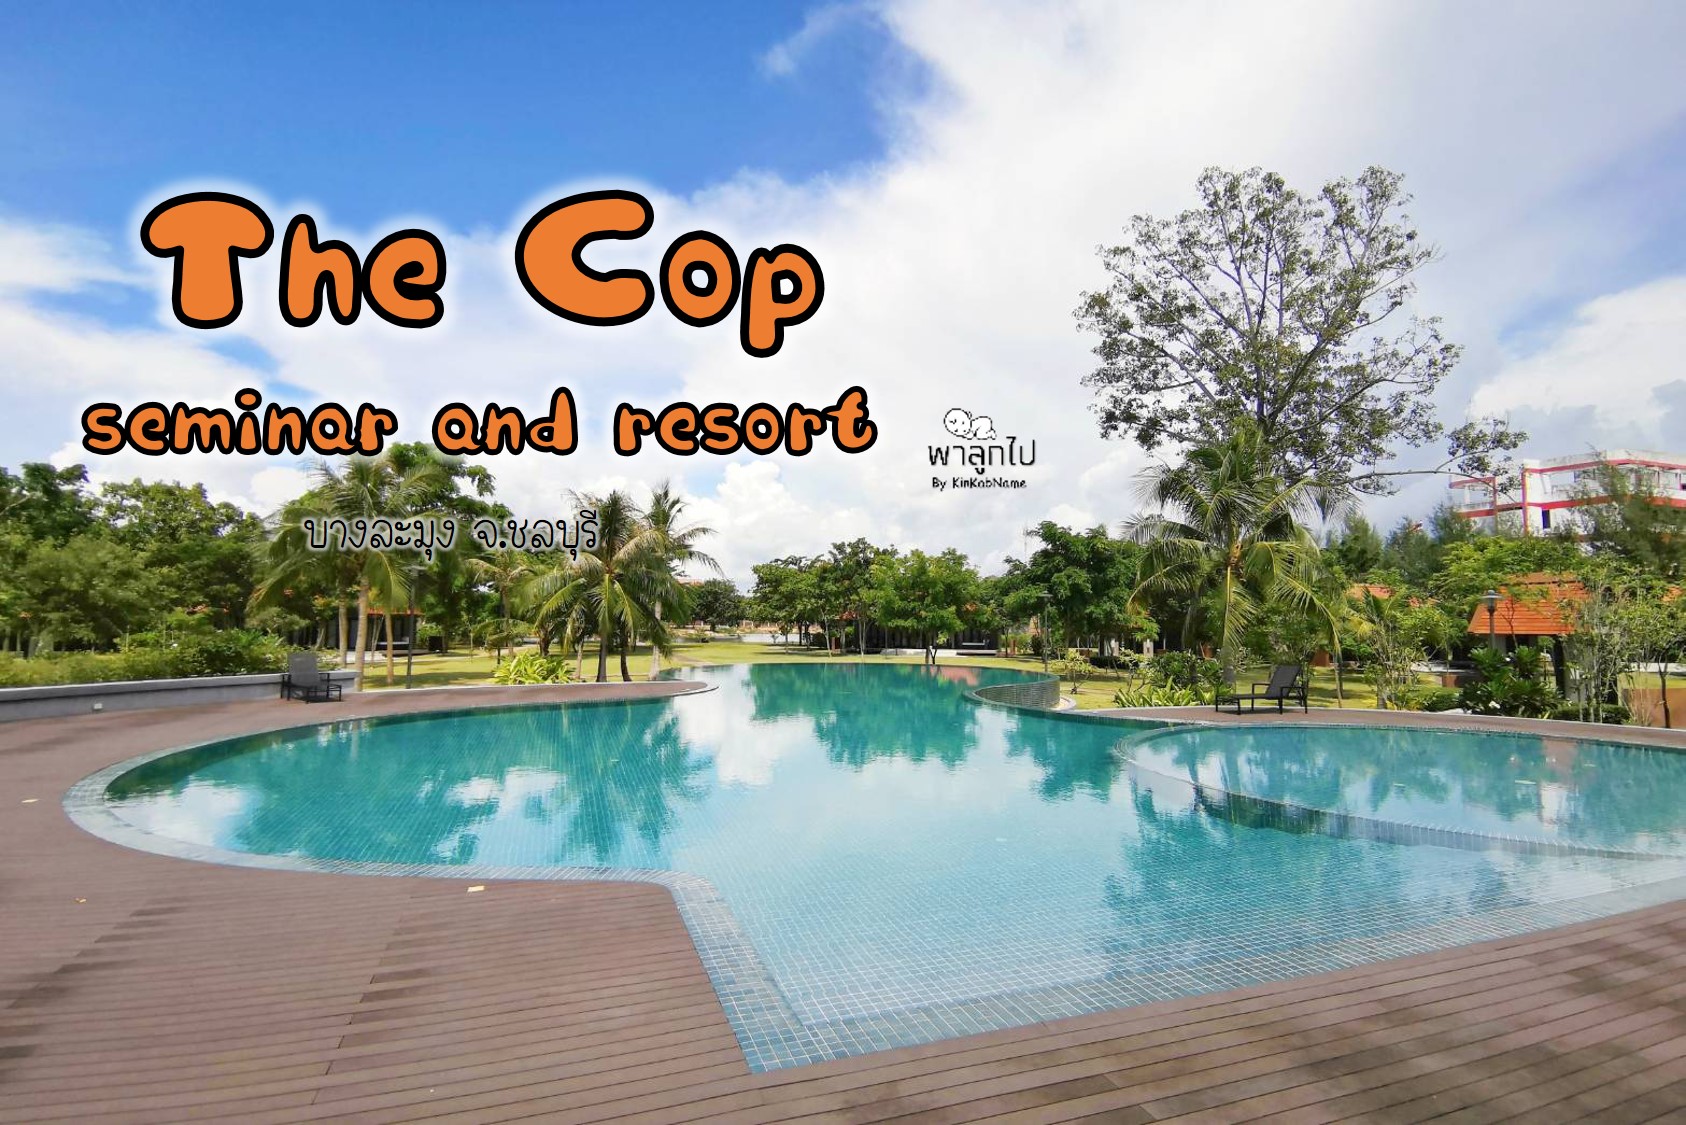 ที่พักแสนสงบ ติดทะเล ชลบุรี The Cop Seminar & Resort (ไม่ลับ  แต่คนไม่รู้เยอะ) - Pantip